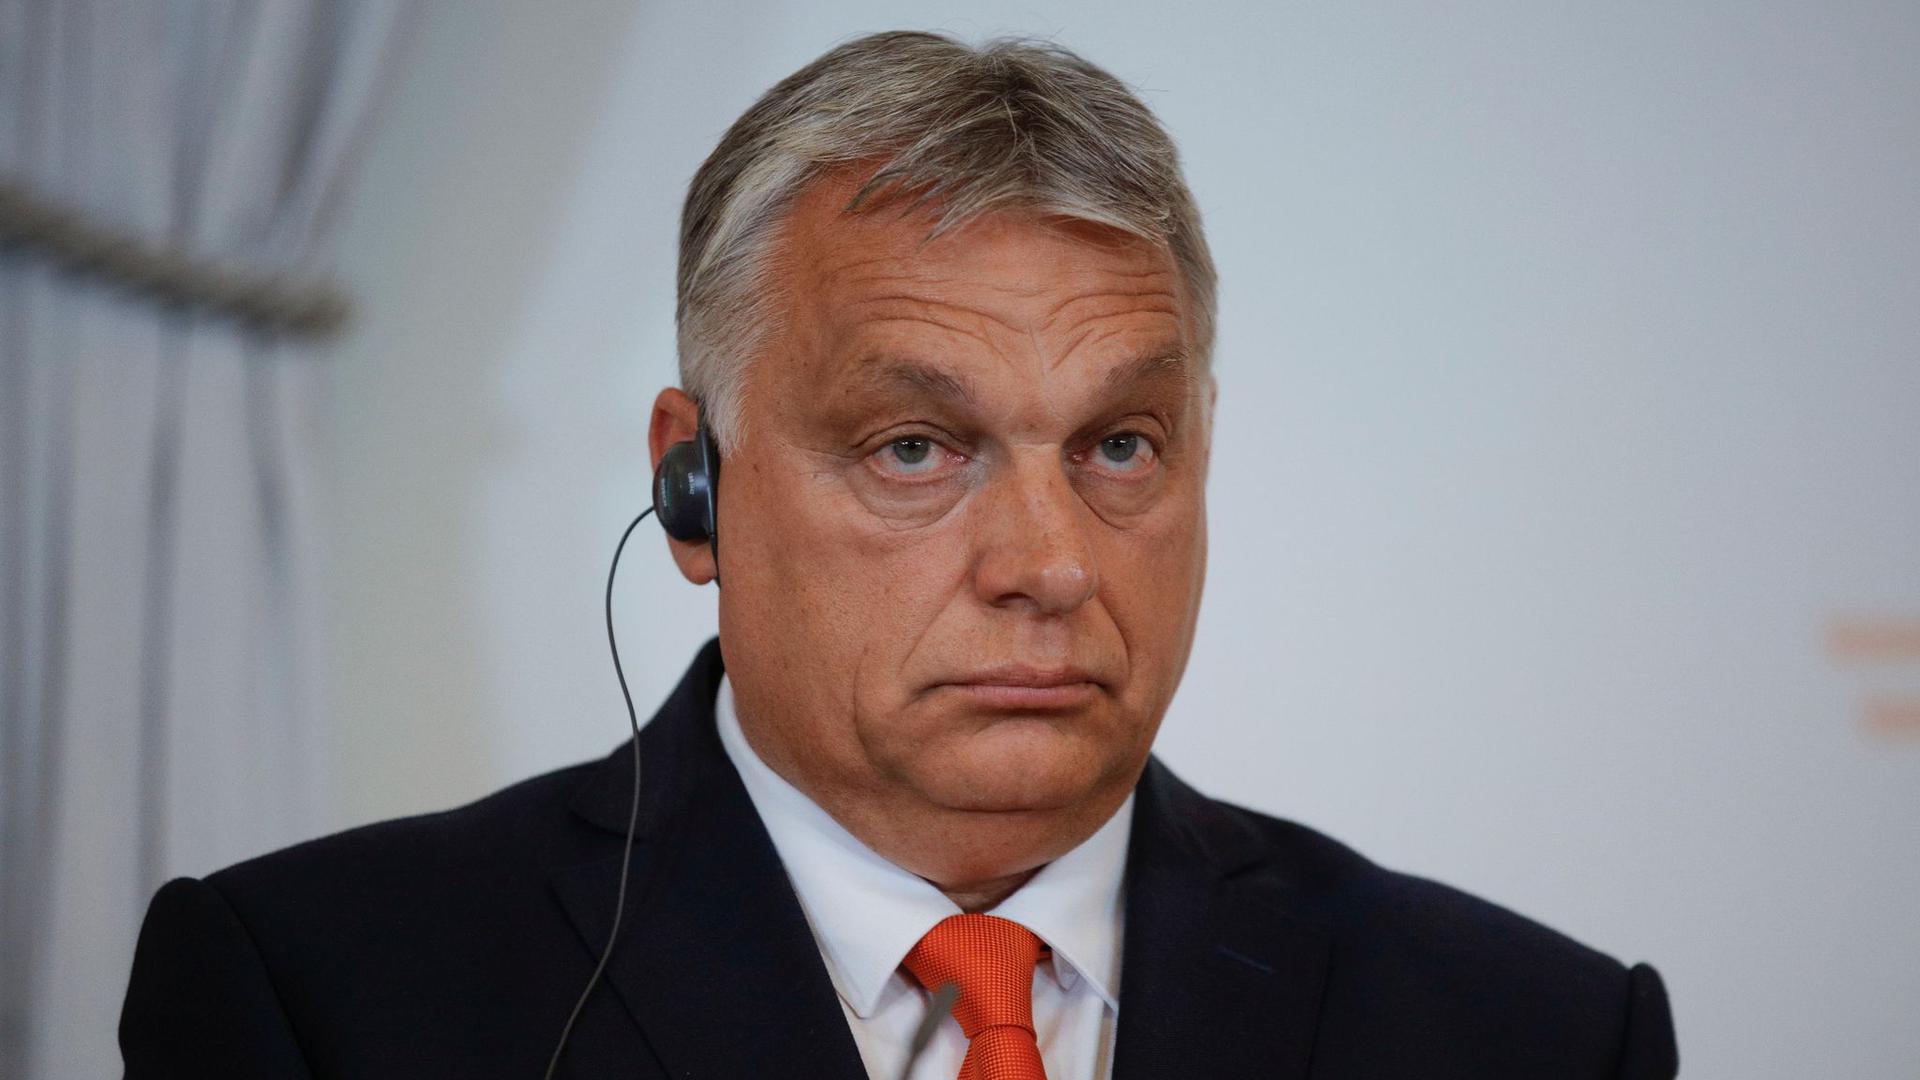 Viktor Orban steht wegen seiner rassistischen Äußerungen in der Kritik.